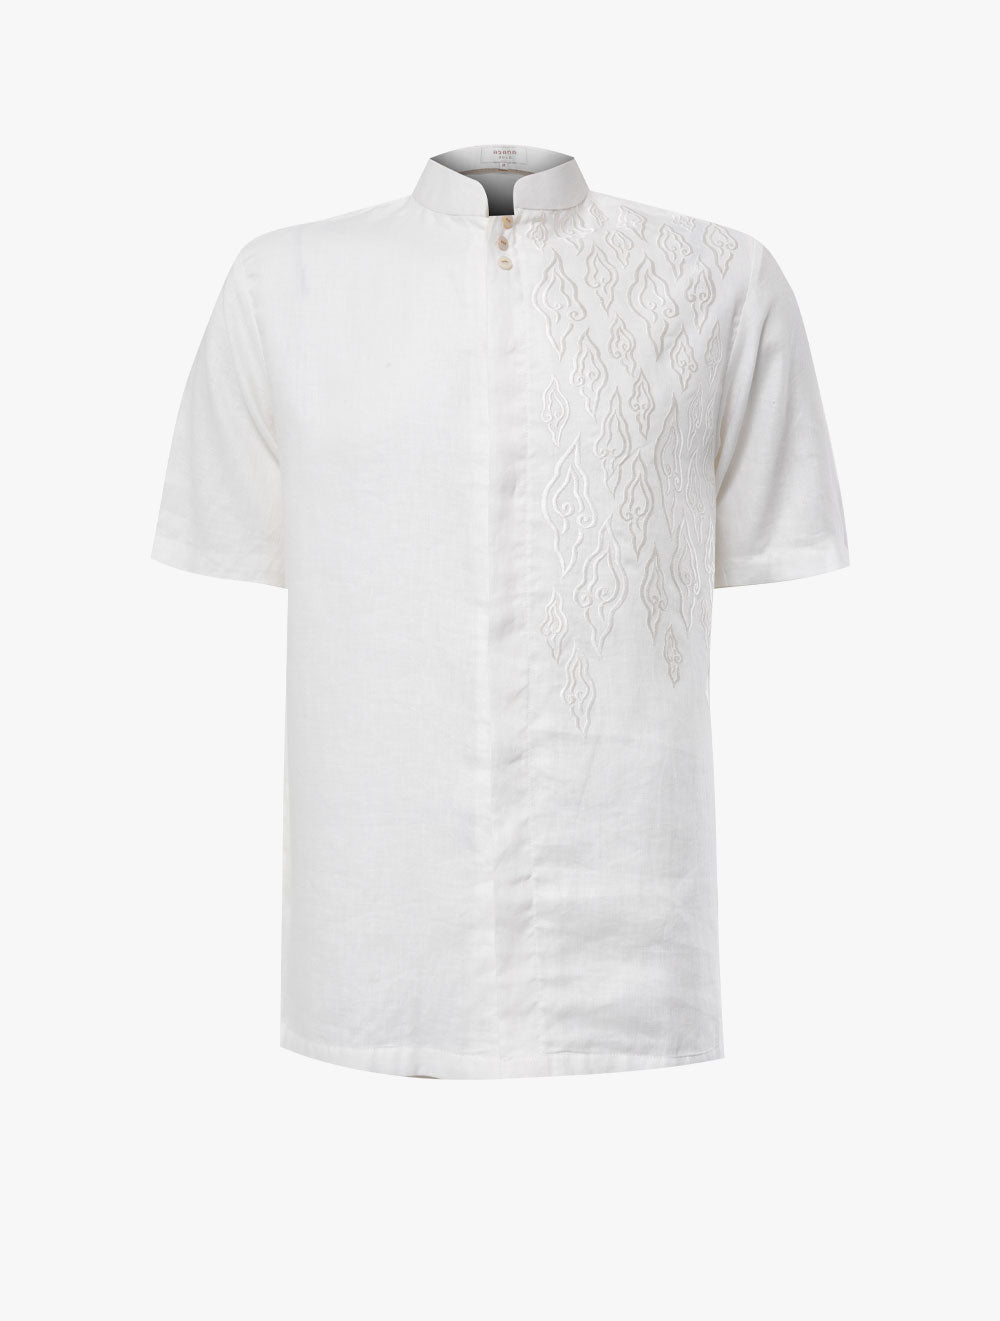 ASANA Rumi Short Sleeves Linen Cotton Koko Shirt (SS-RUMI-WHT)